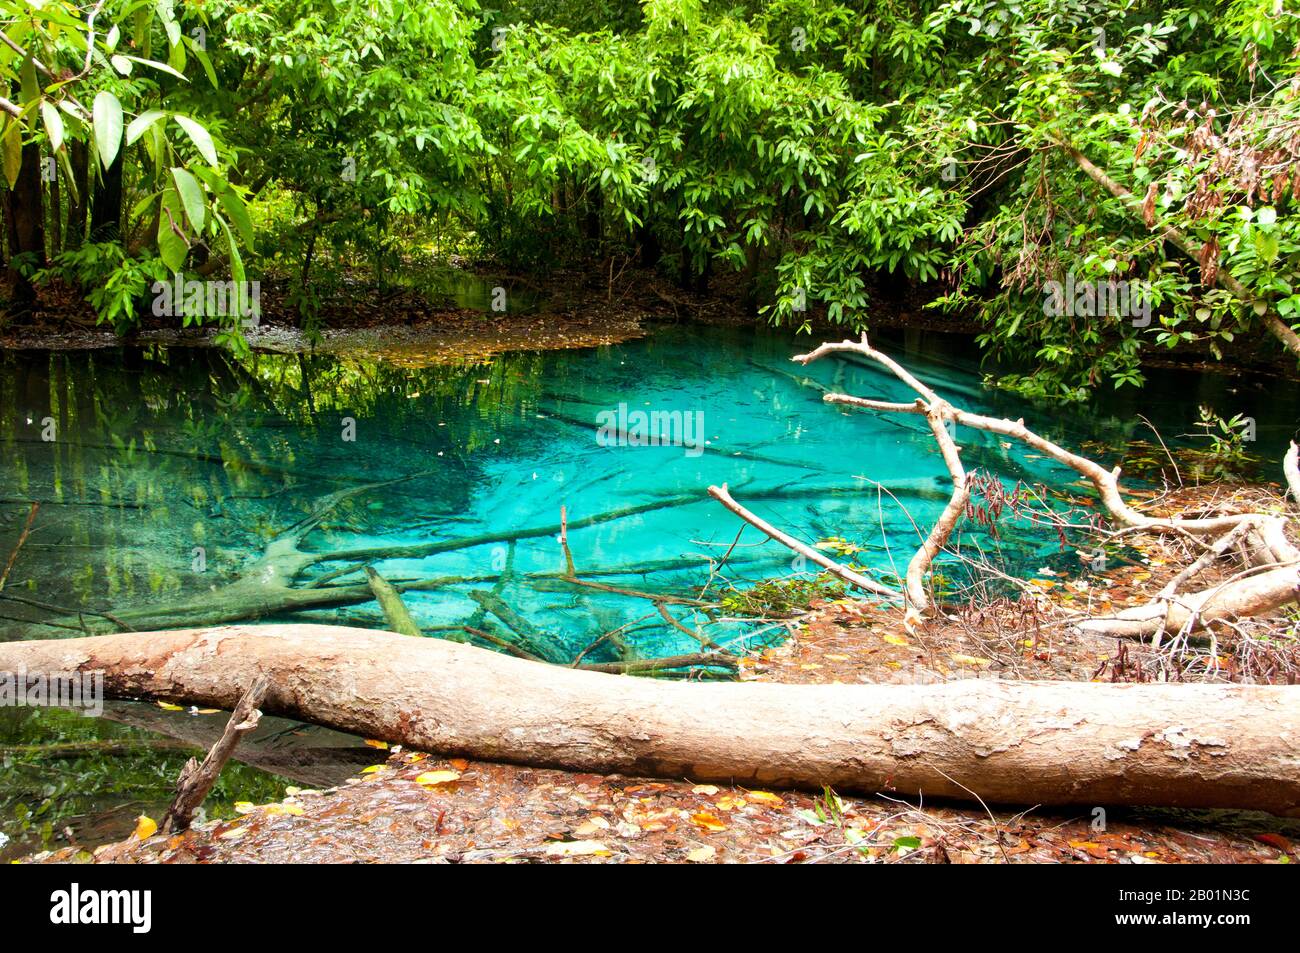 Thailand: Blue Pool, Tung Tieo Forest Trail, Khao Pra - Bang Khram Wildlife Sanctuary, Provinz Krabi. Das Khao Pra - Bang Khram Wildlife Sanctuary liegt südöstlich von Krabi Town 18 km östlich der kleinen Stadt Khlong Thom. Das bei Vogelbeobachtern beliebte Schutzgebiet ist die Heimat der seltenen Gurney’s Pitta, einer bedrohten Art, die einst als ausgestorben galt, aber in sehr geringer Zahl sowohl hier als auch über die Grenze in abgelegenen Teilen Südmyanmars (Burma) wiederentdeckt wurde. Stockfoto